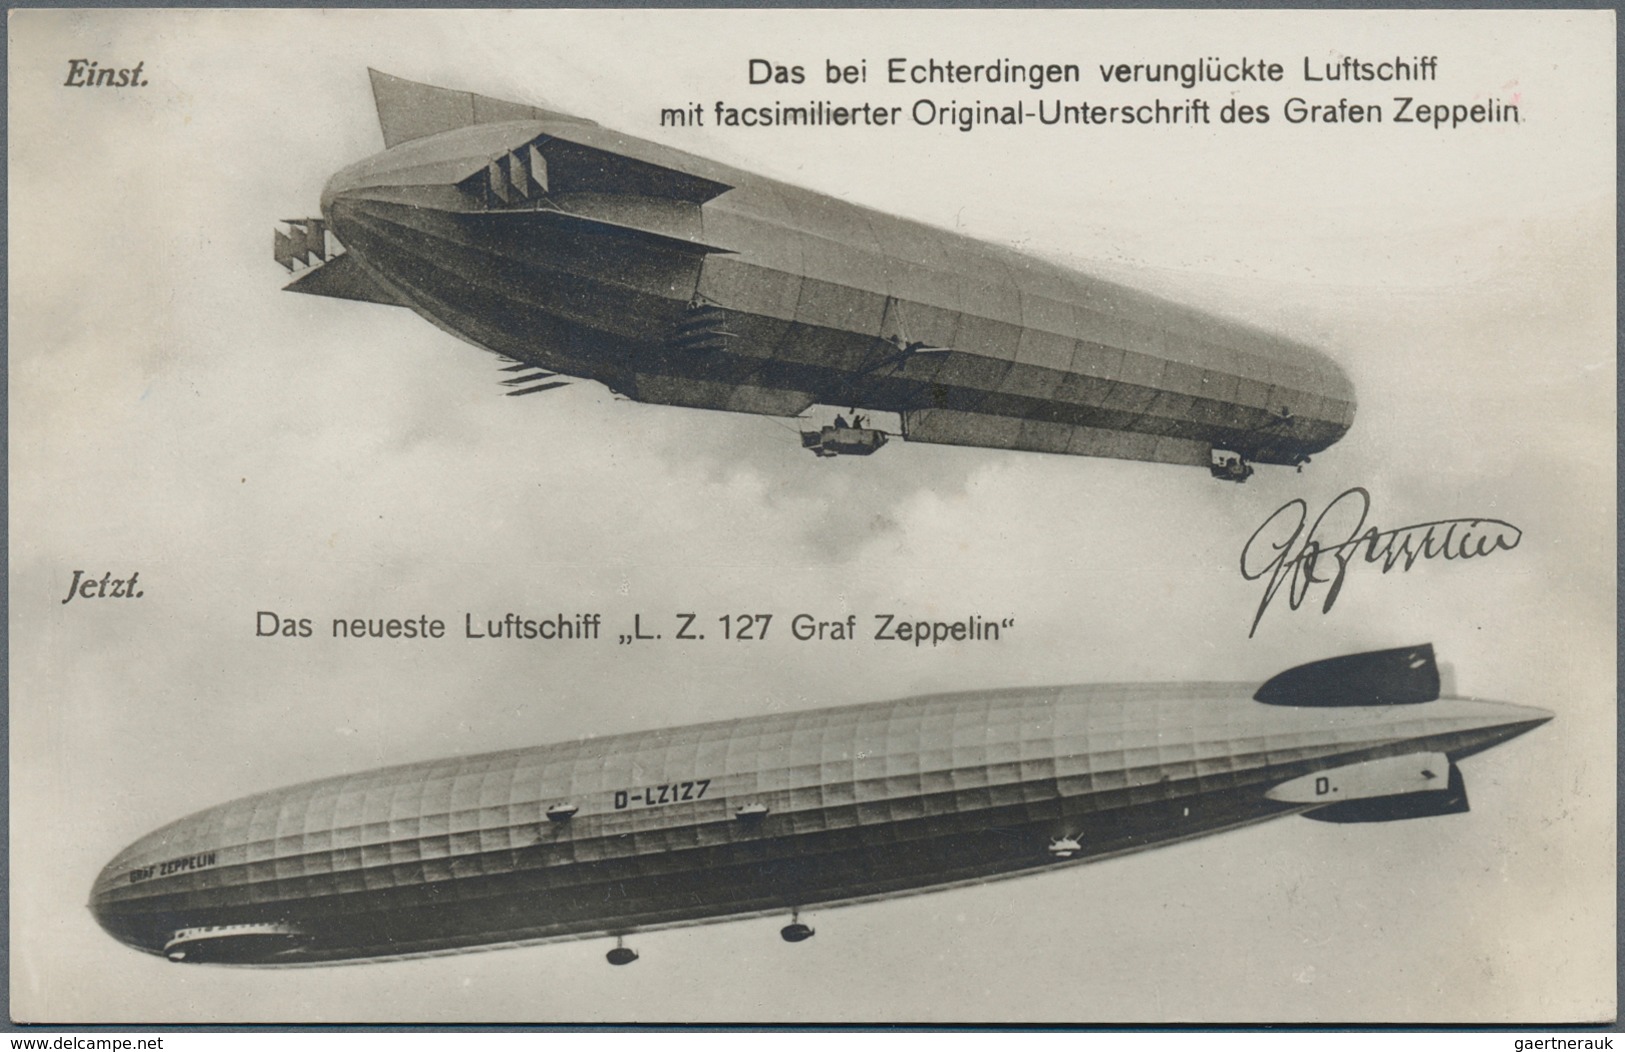 Zeppelinpost Deutschland: Collection of over 100 Zeppelin items, around 70 flown covers and 33 Schue